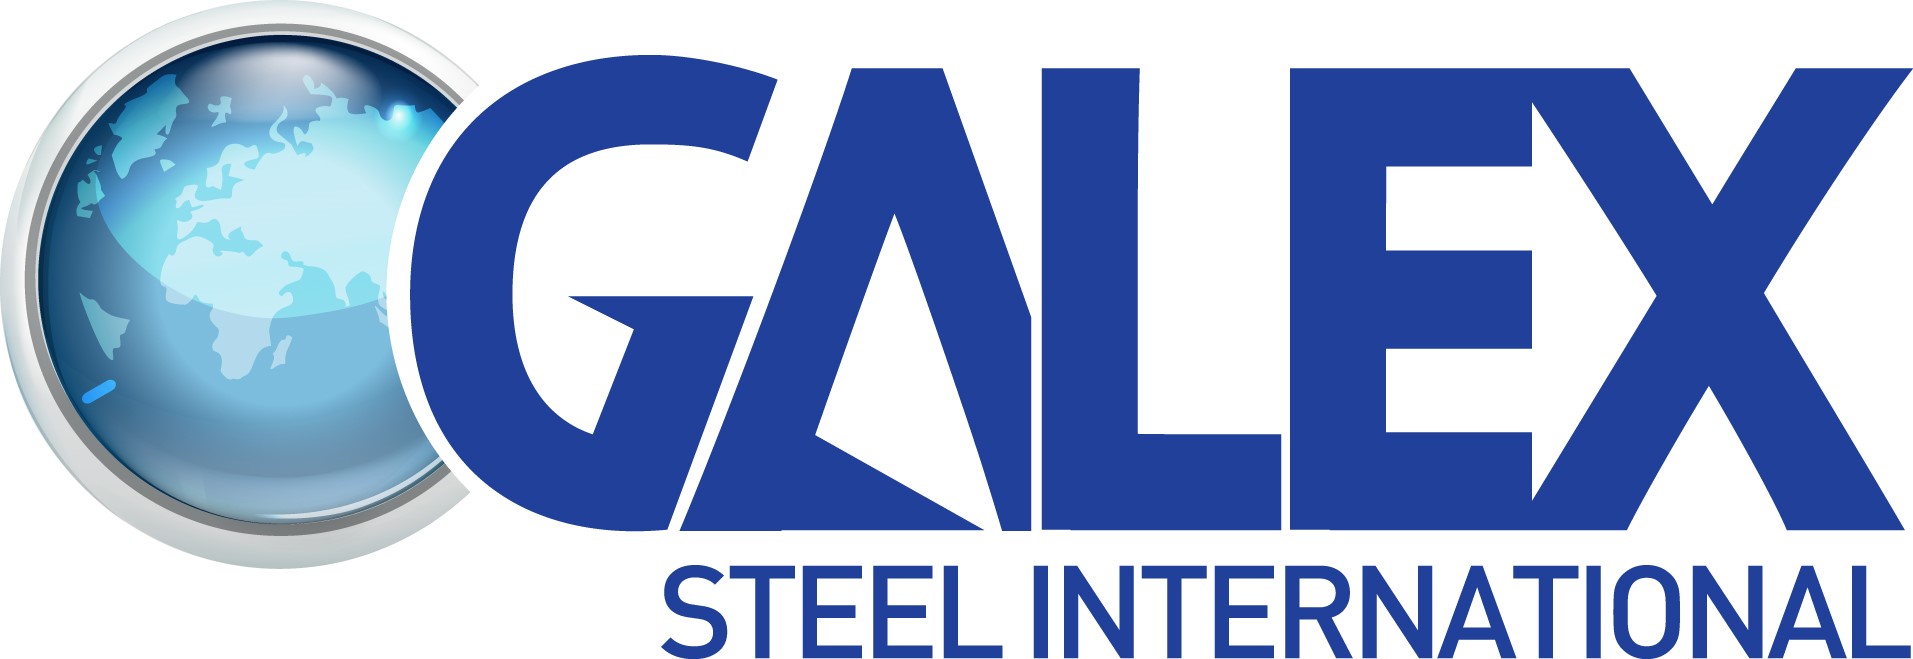 Galex Steel International